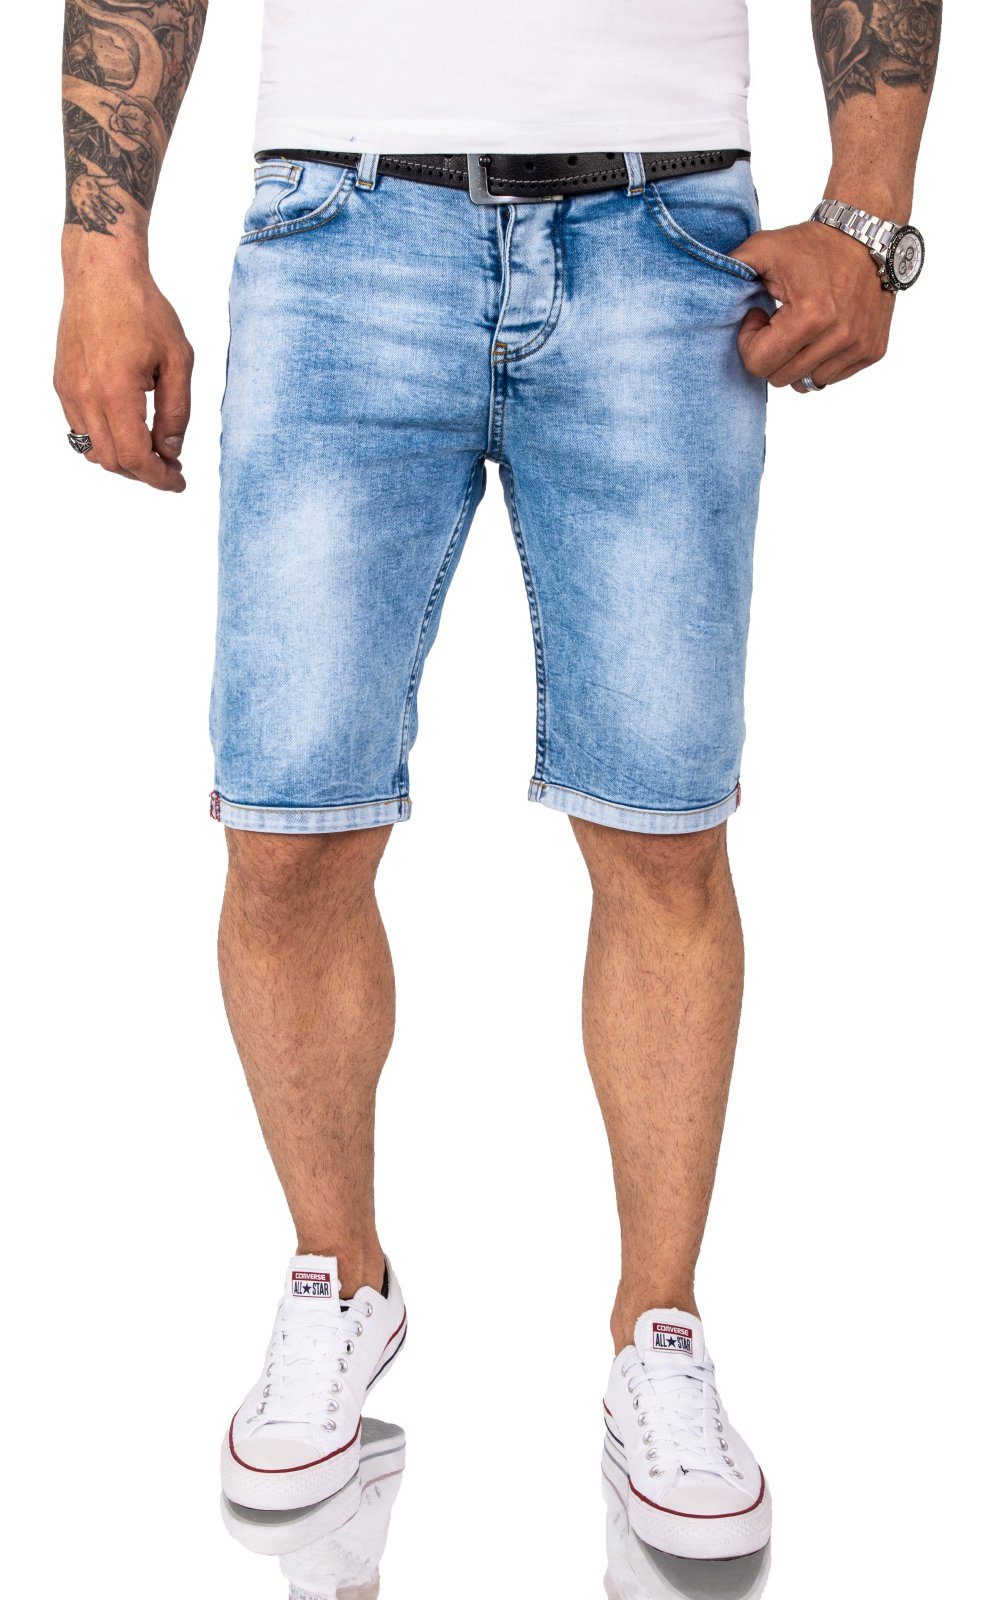 Jeans Shorts Herren in großen Größen online kaufen | OTTO